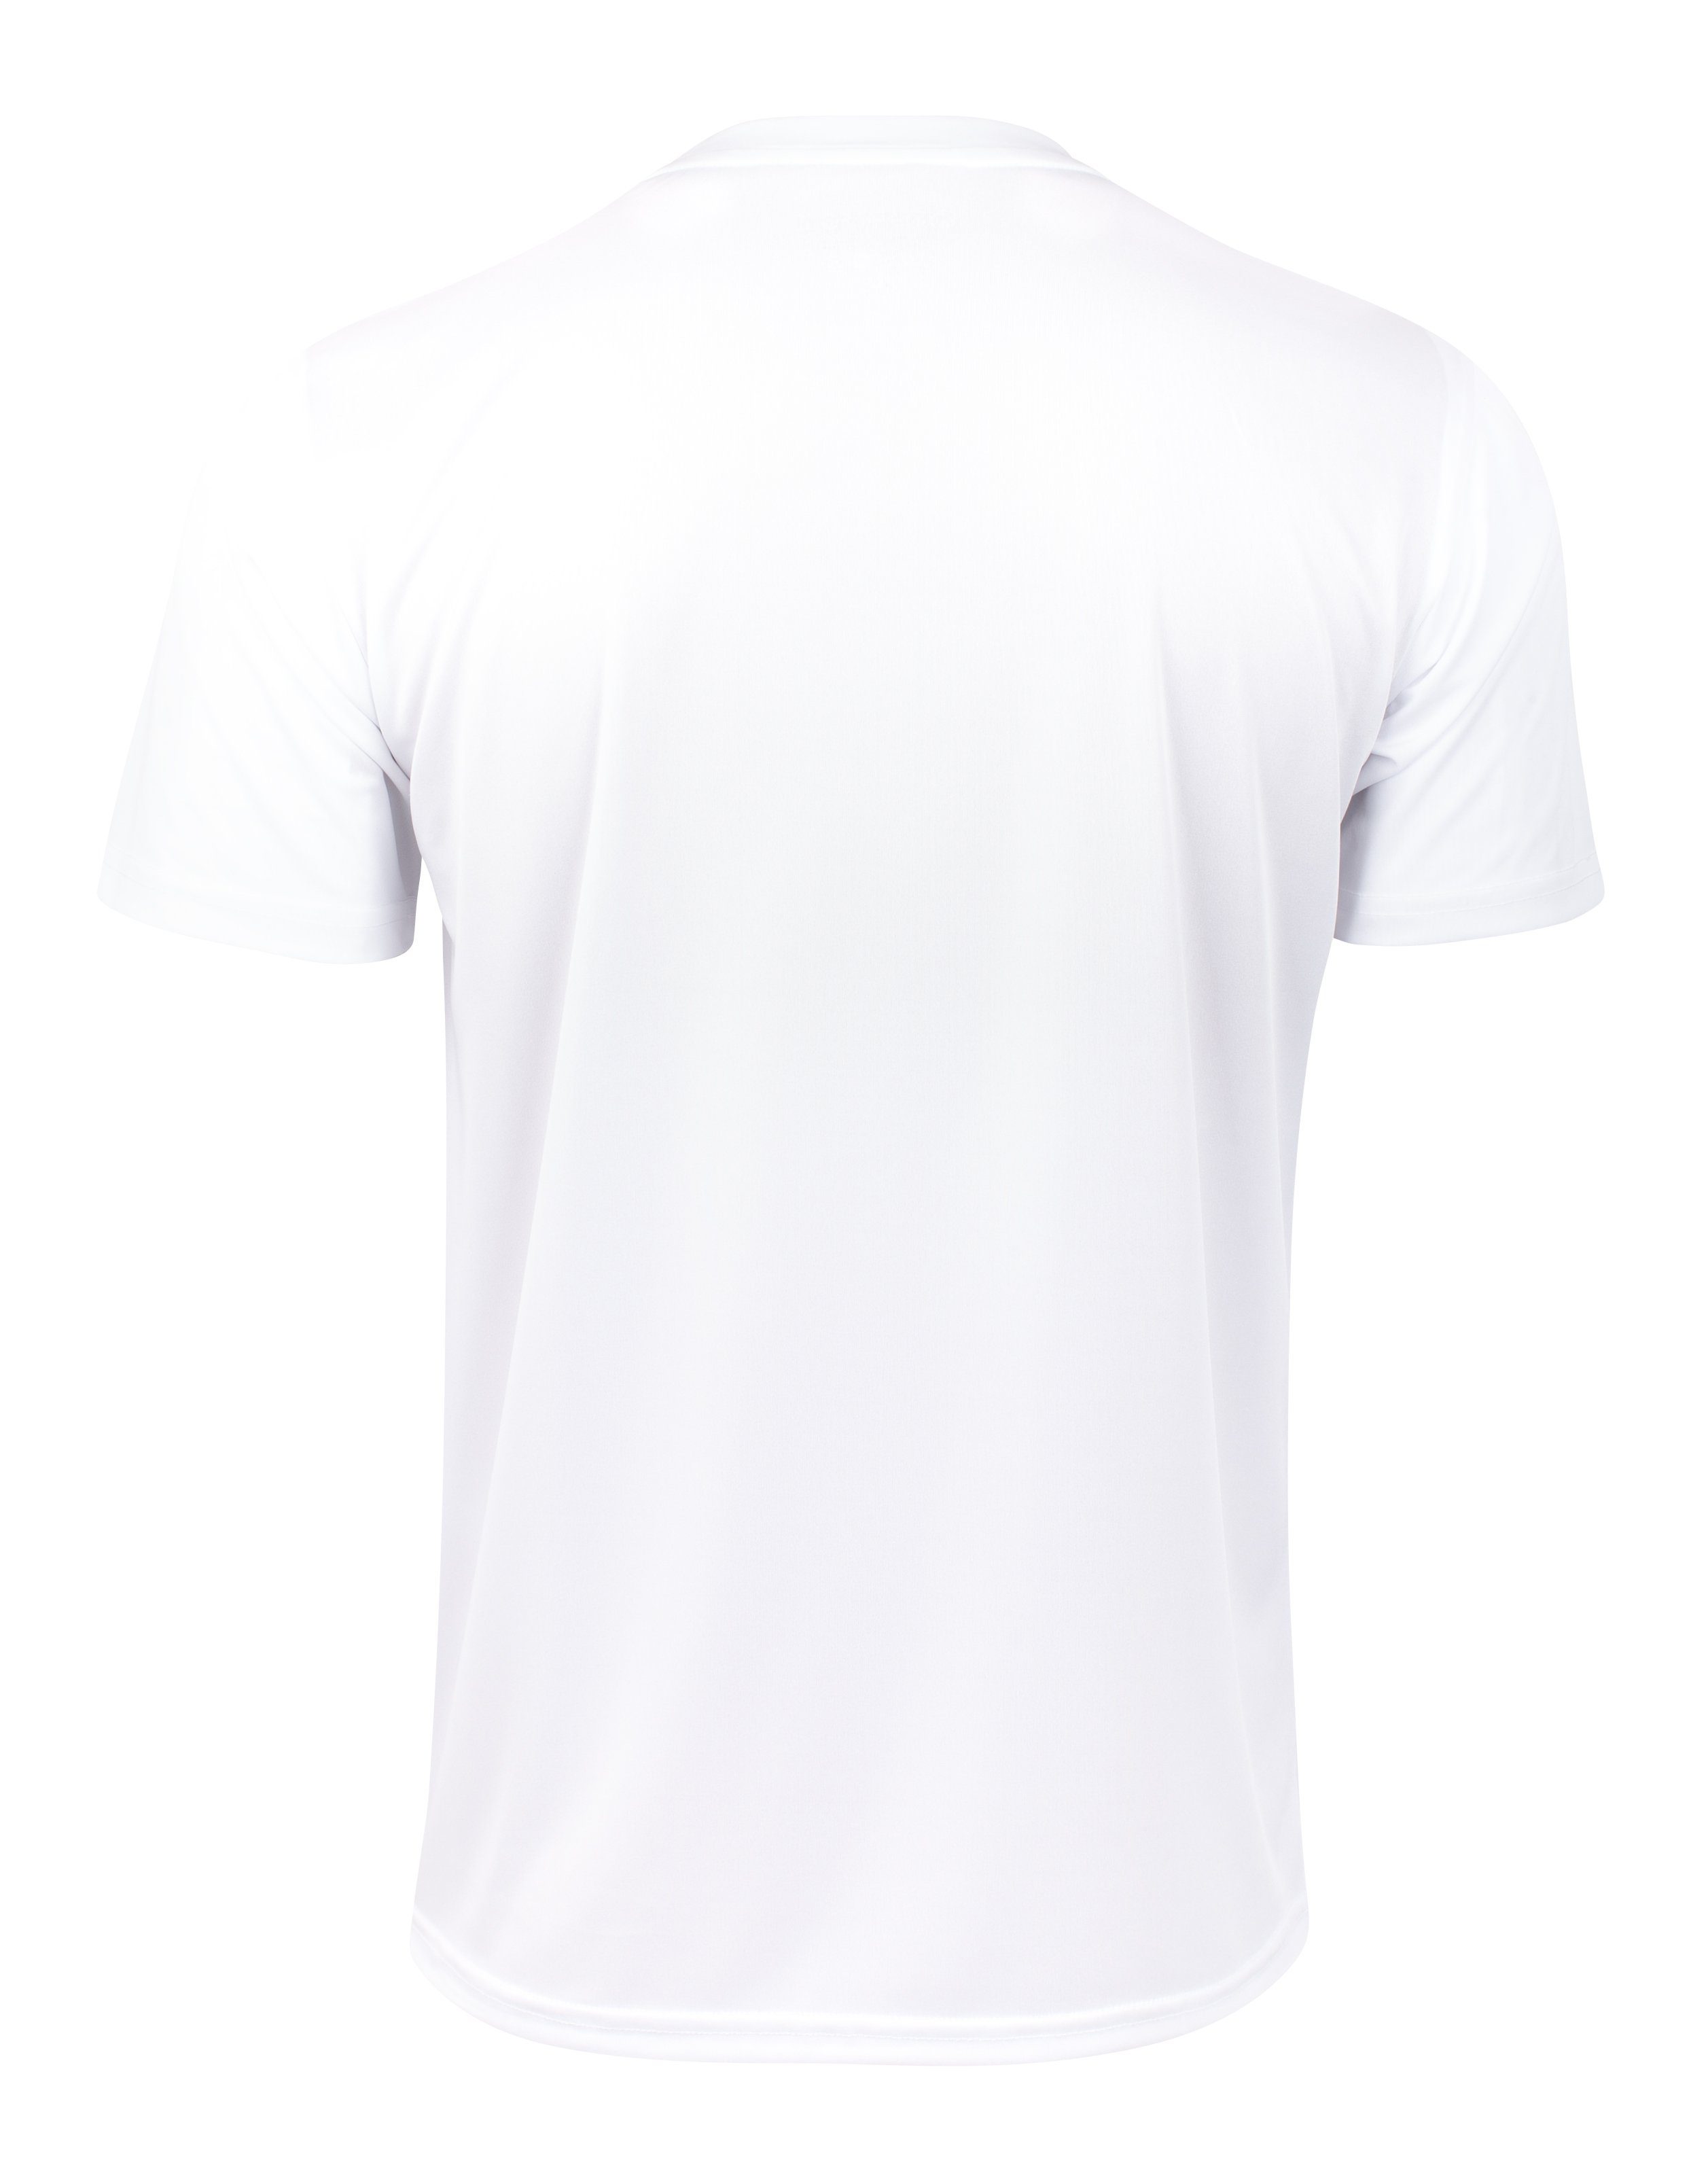 Kurzarm Weiss Trainingsshirt T-Shirt Trikot "Stained"- Herren Soul® T-Shirt, Sport-Shirt, Stark